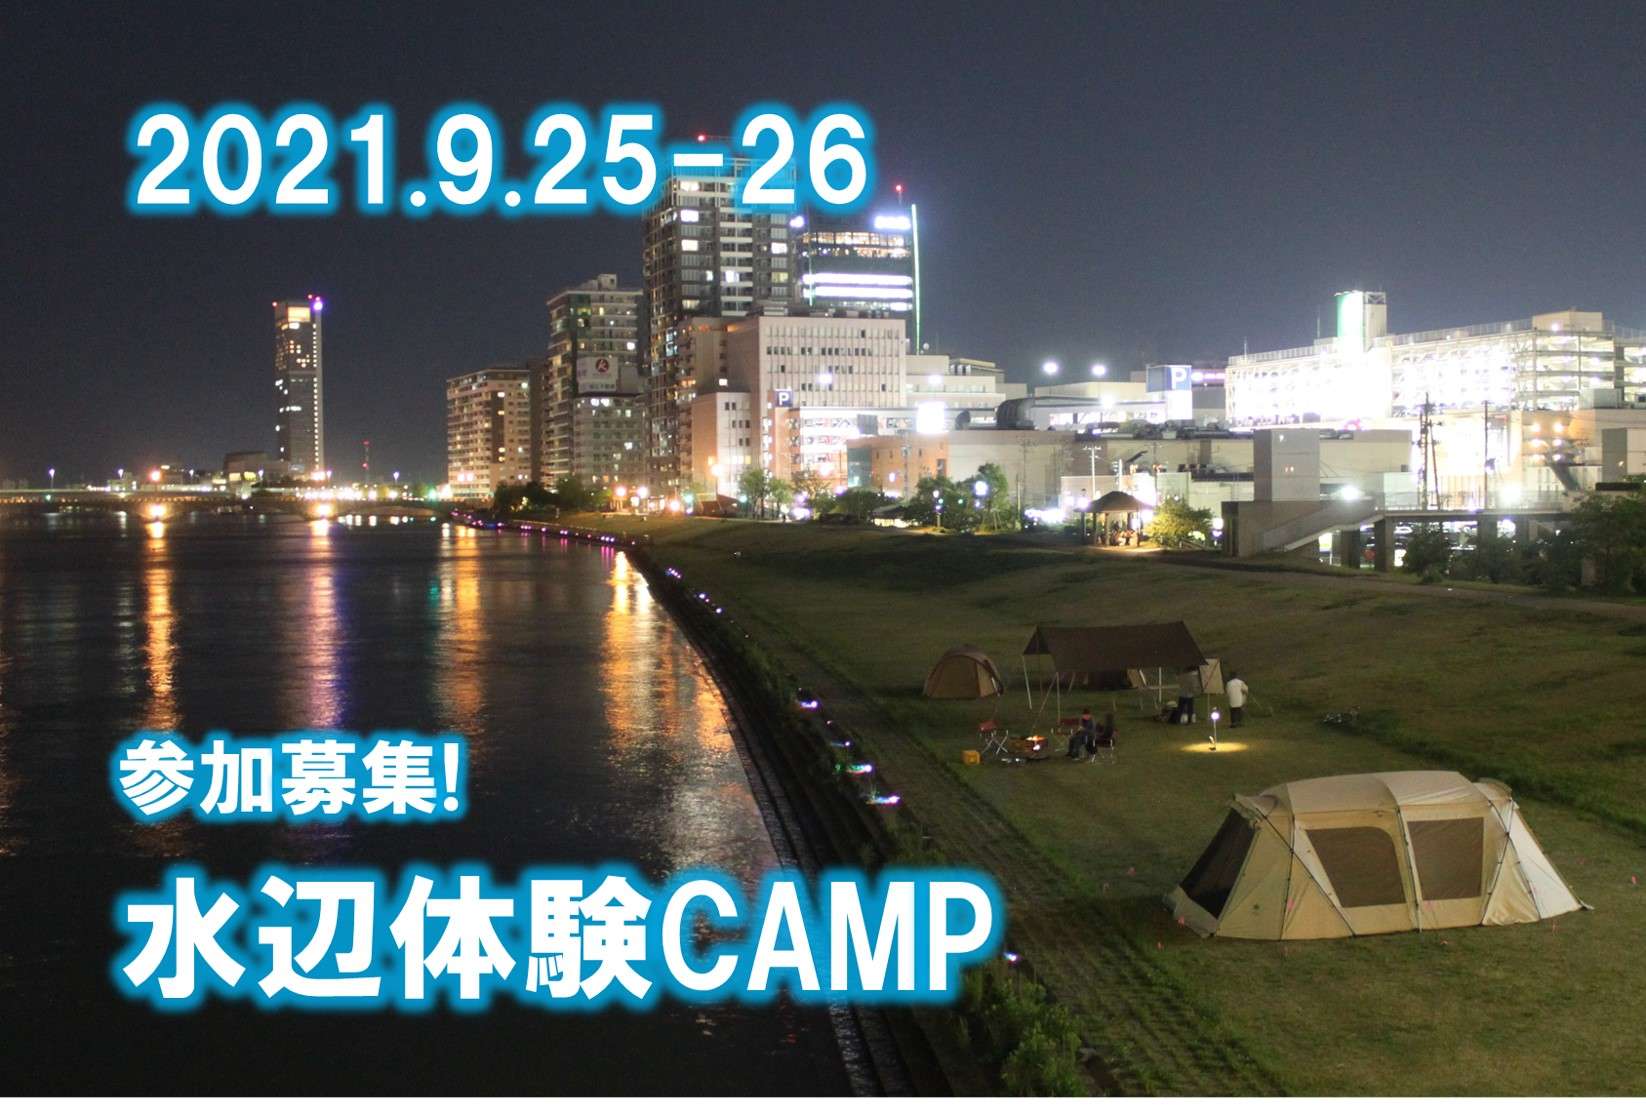 水辺体験キャンプ2021.9.25-26開催！